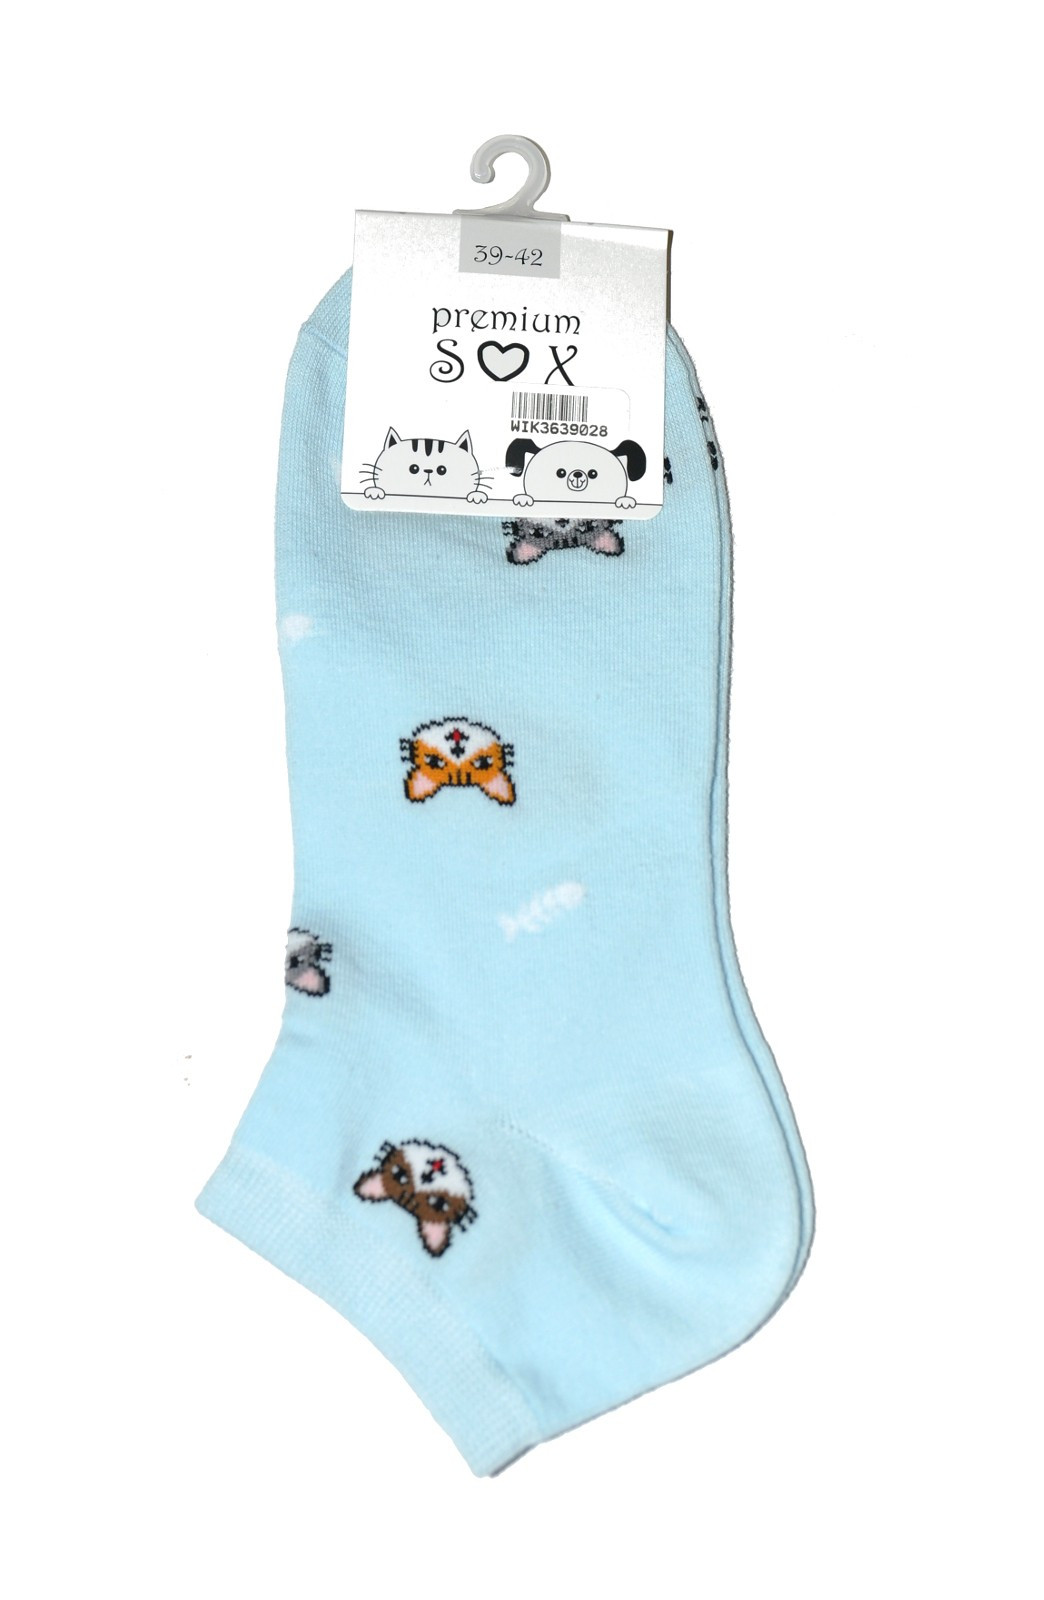 Dámské ponožky WiK 36390 Premium Sox 35-42 světle modrá 39-42